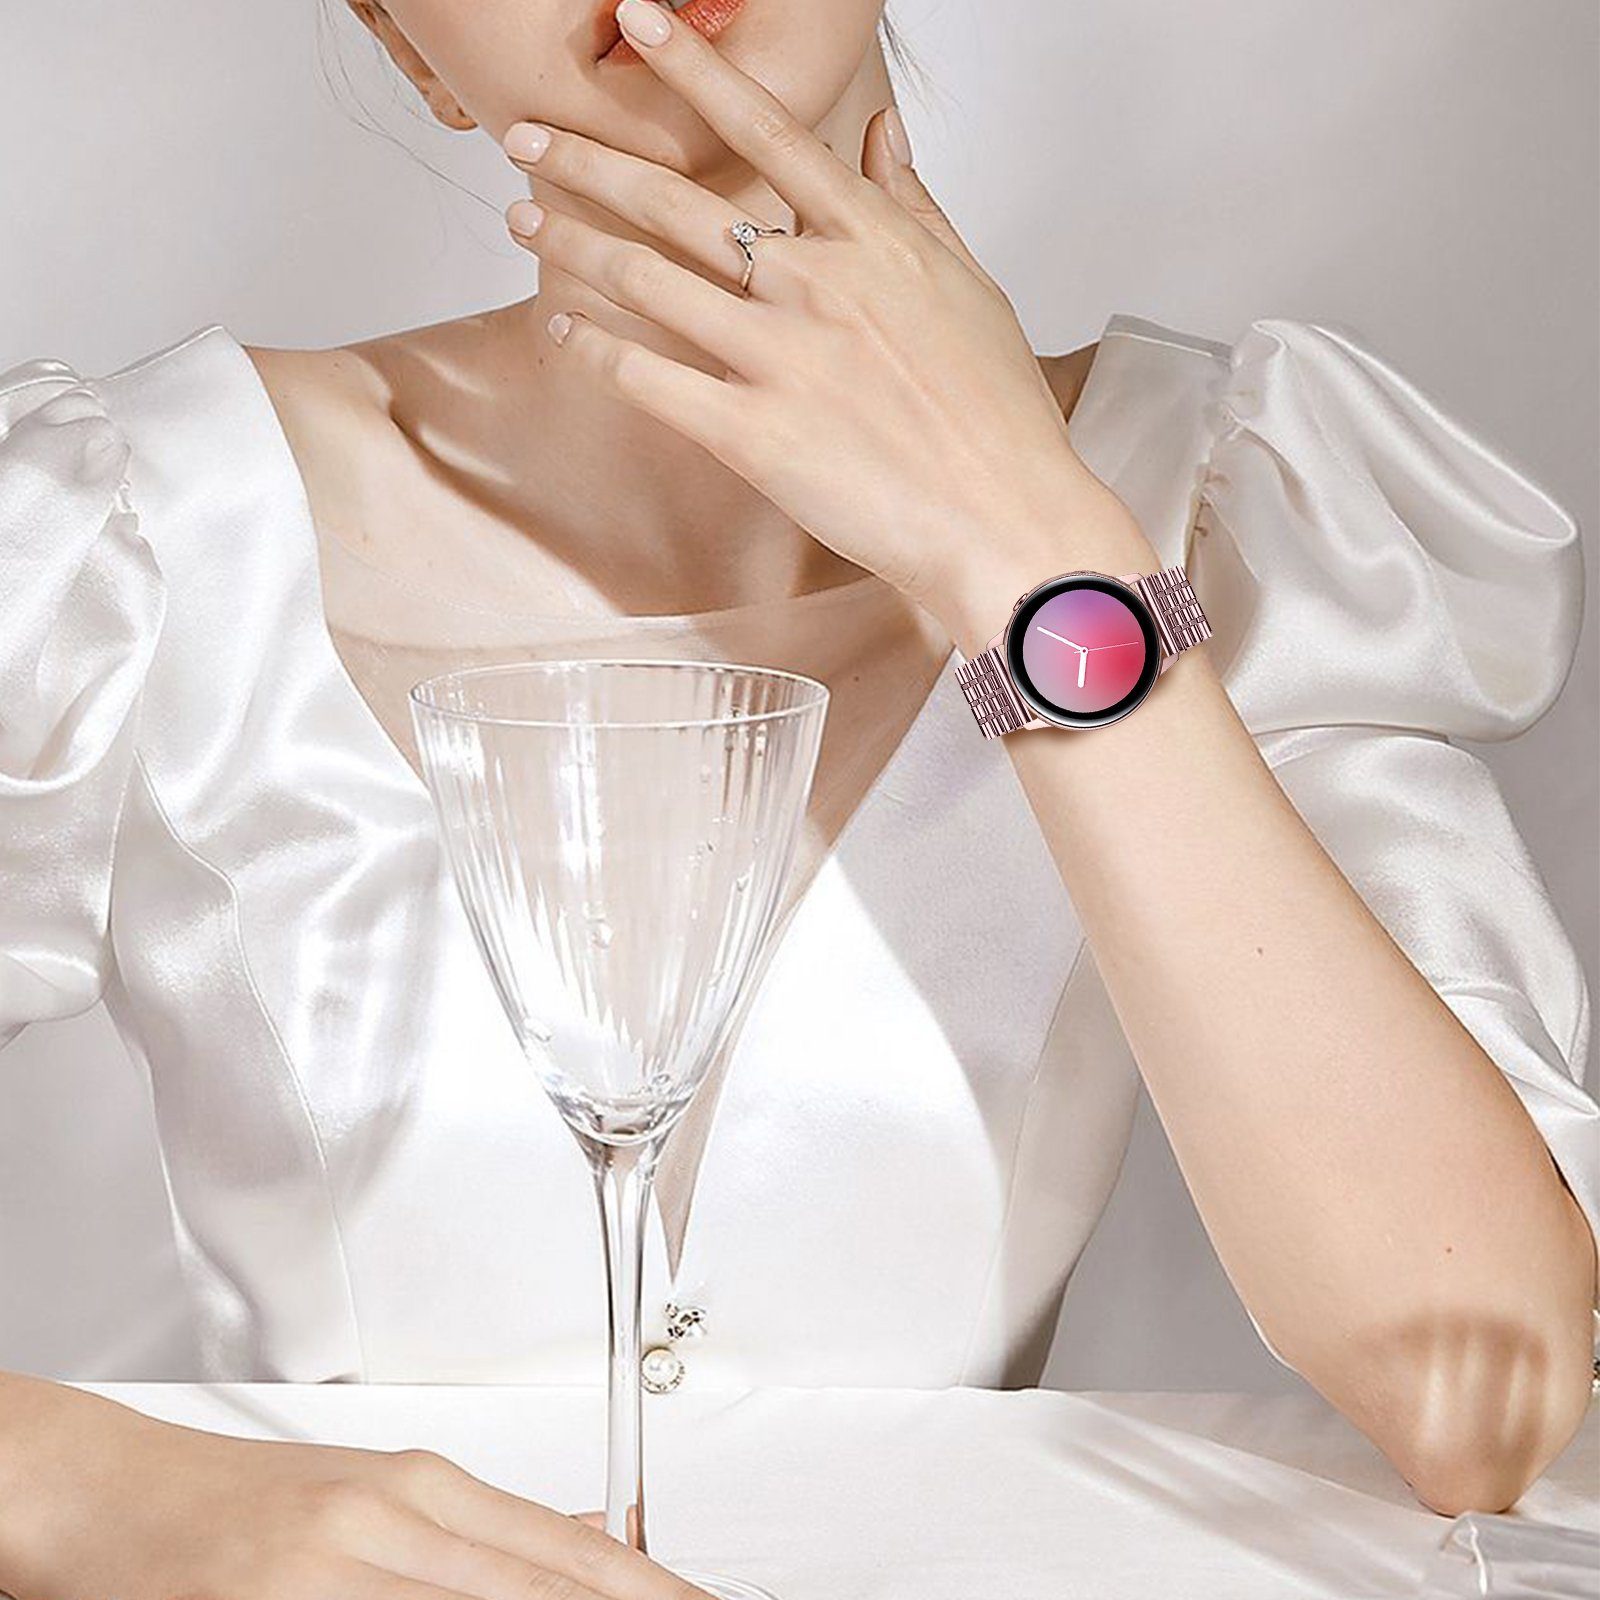 Diida 41/42MM/active/S2, Watch Band, Smartwatch-Armband für, GT2 Uhrenarmbänder,Geeignet Galaxy Smartwatch-Armband,Watch Watch 3 2/watch HUAWEI 42mm